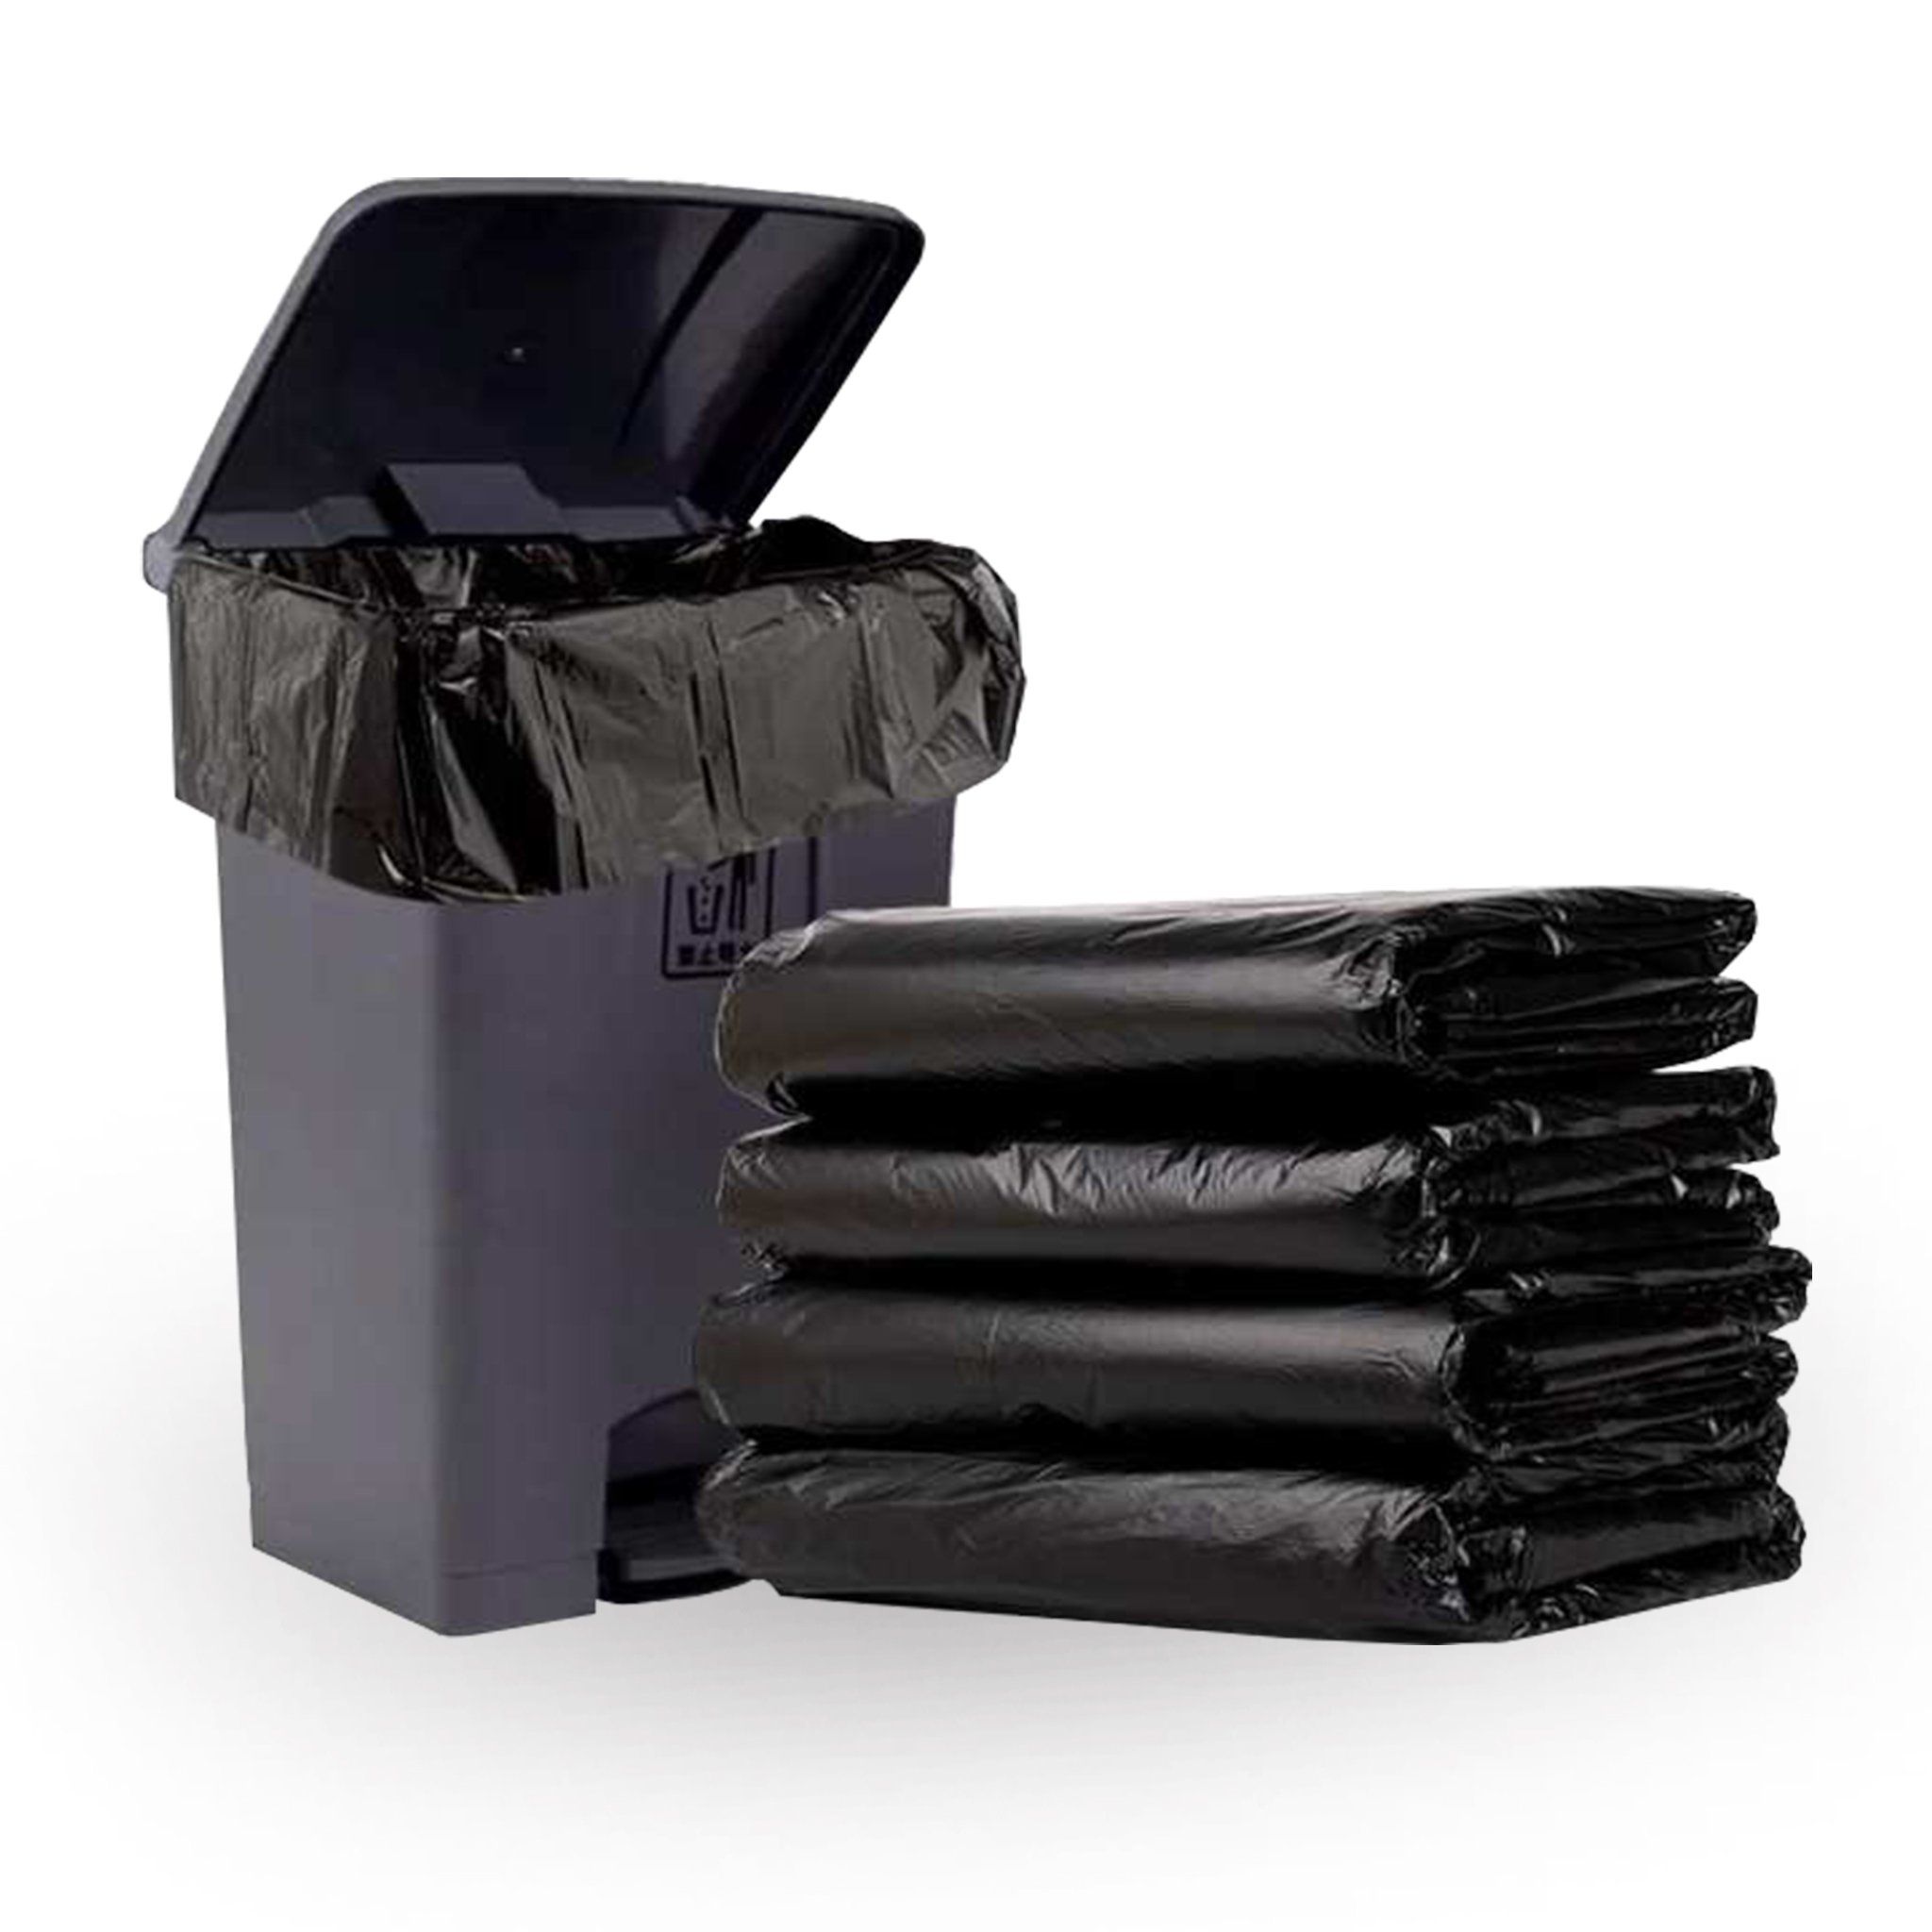  Túi rác đen 120×150 (240L) - 6 - 7 cái/ kg 